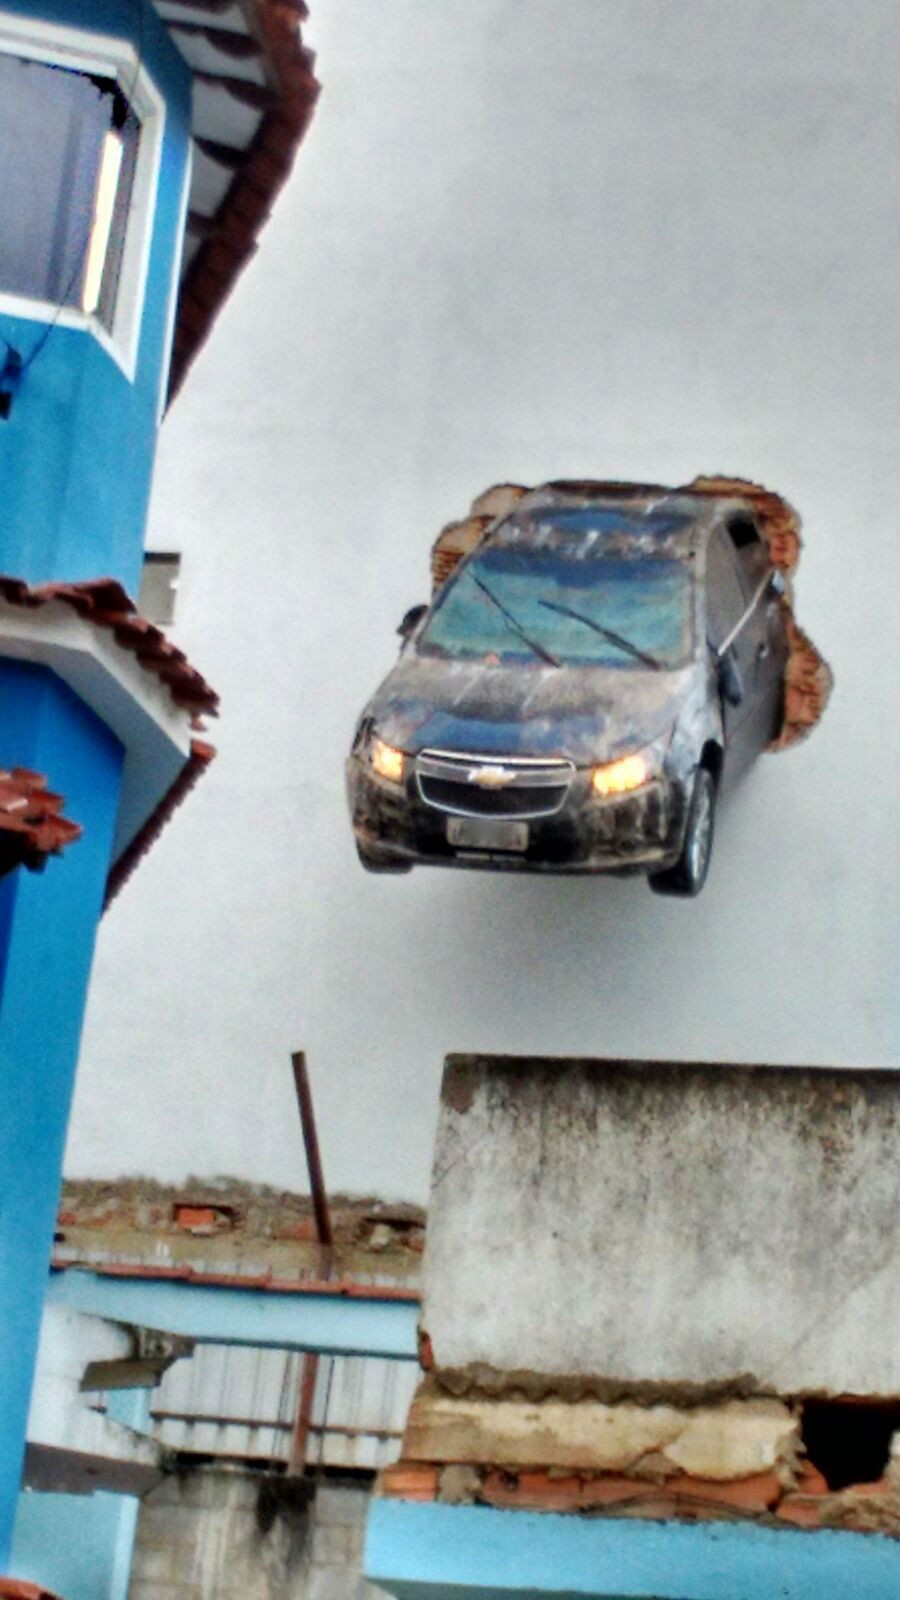 Motorista acelera em garagem e carro fica pendurado em Colatina, espírito santo (Foto: Divulgação/Polícia Militar)